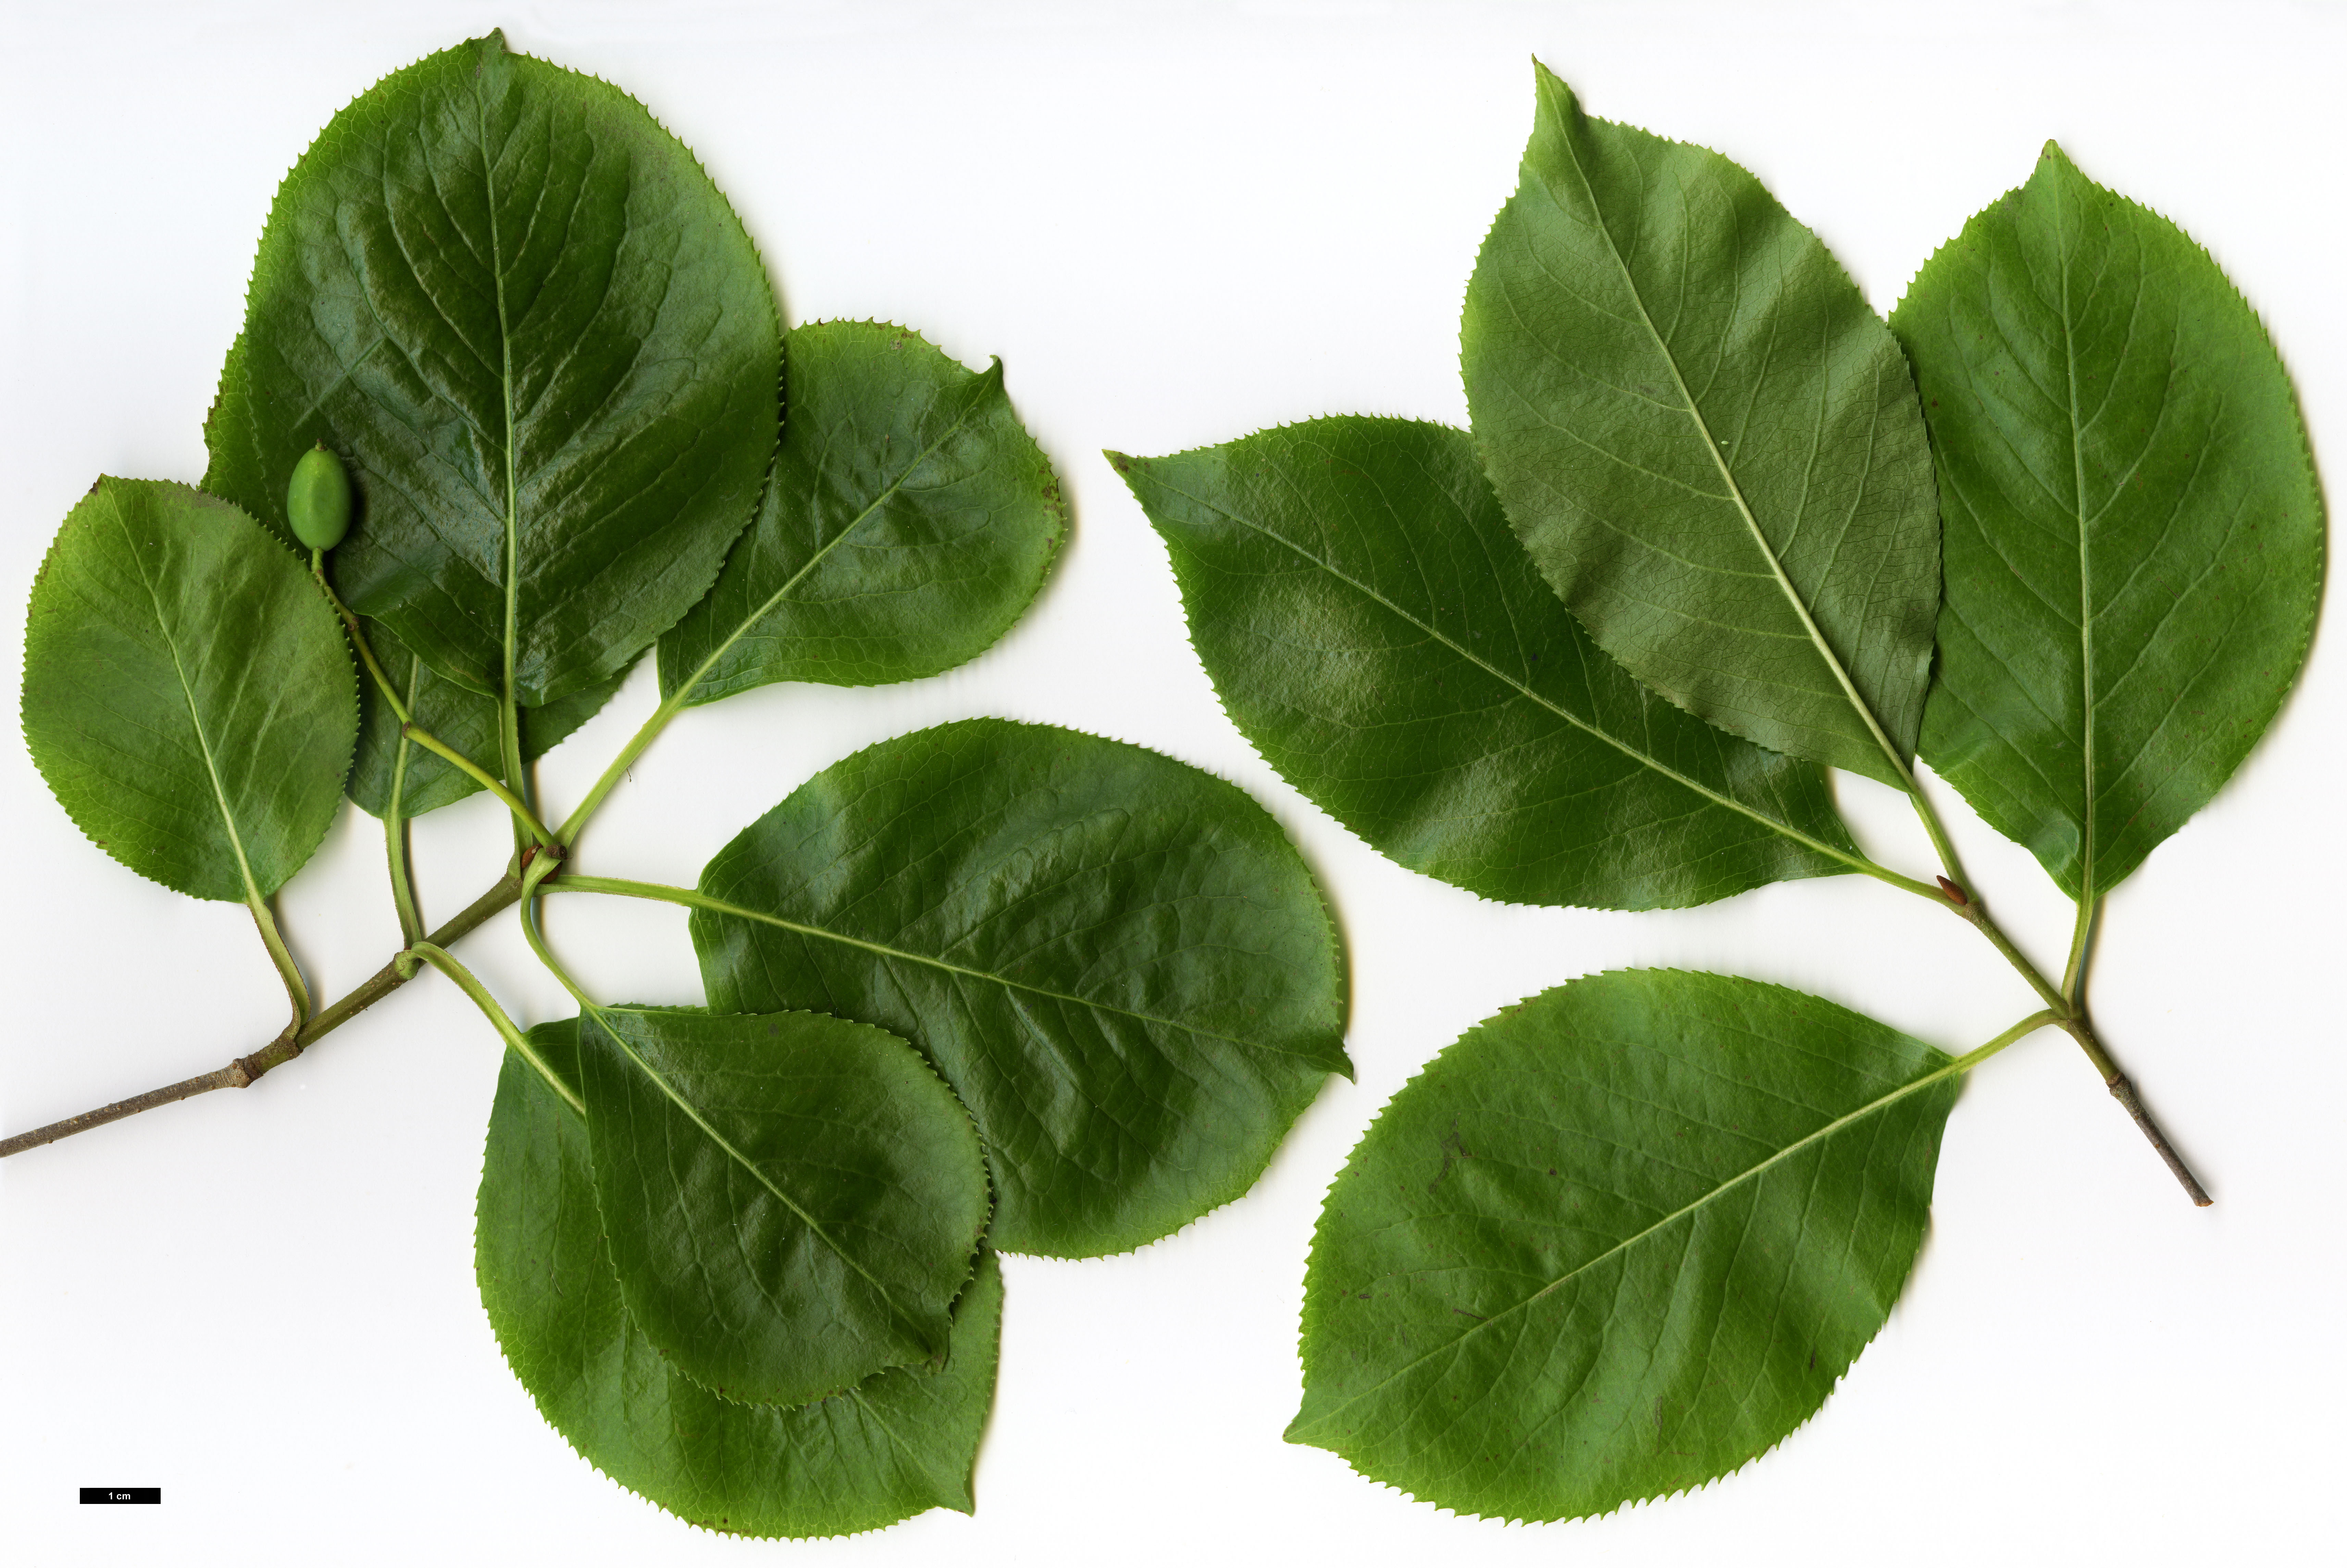 High resolution image: Family: Adoxaceae - Genus: Viburnum - Taxon: rufidulum